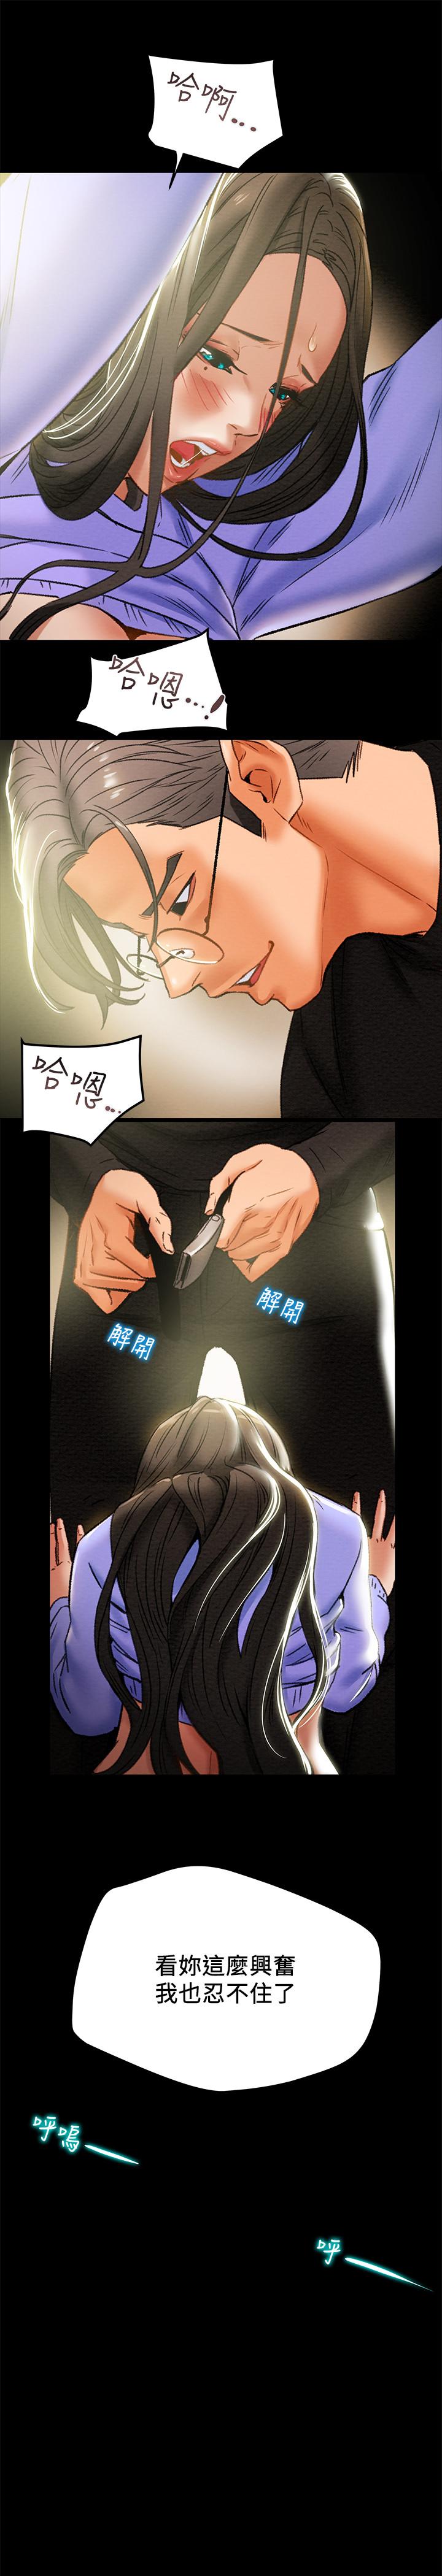 韩国污漫画 純情女攻略計劃 第20话-越来越湿的小穴 21